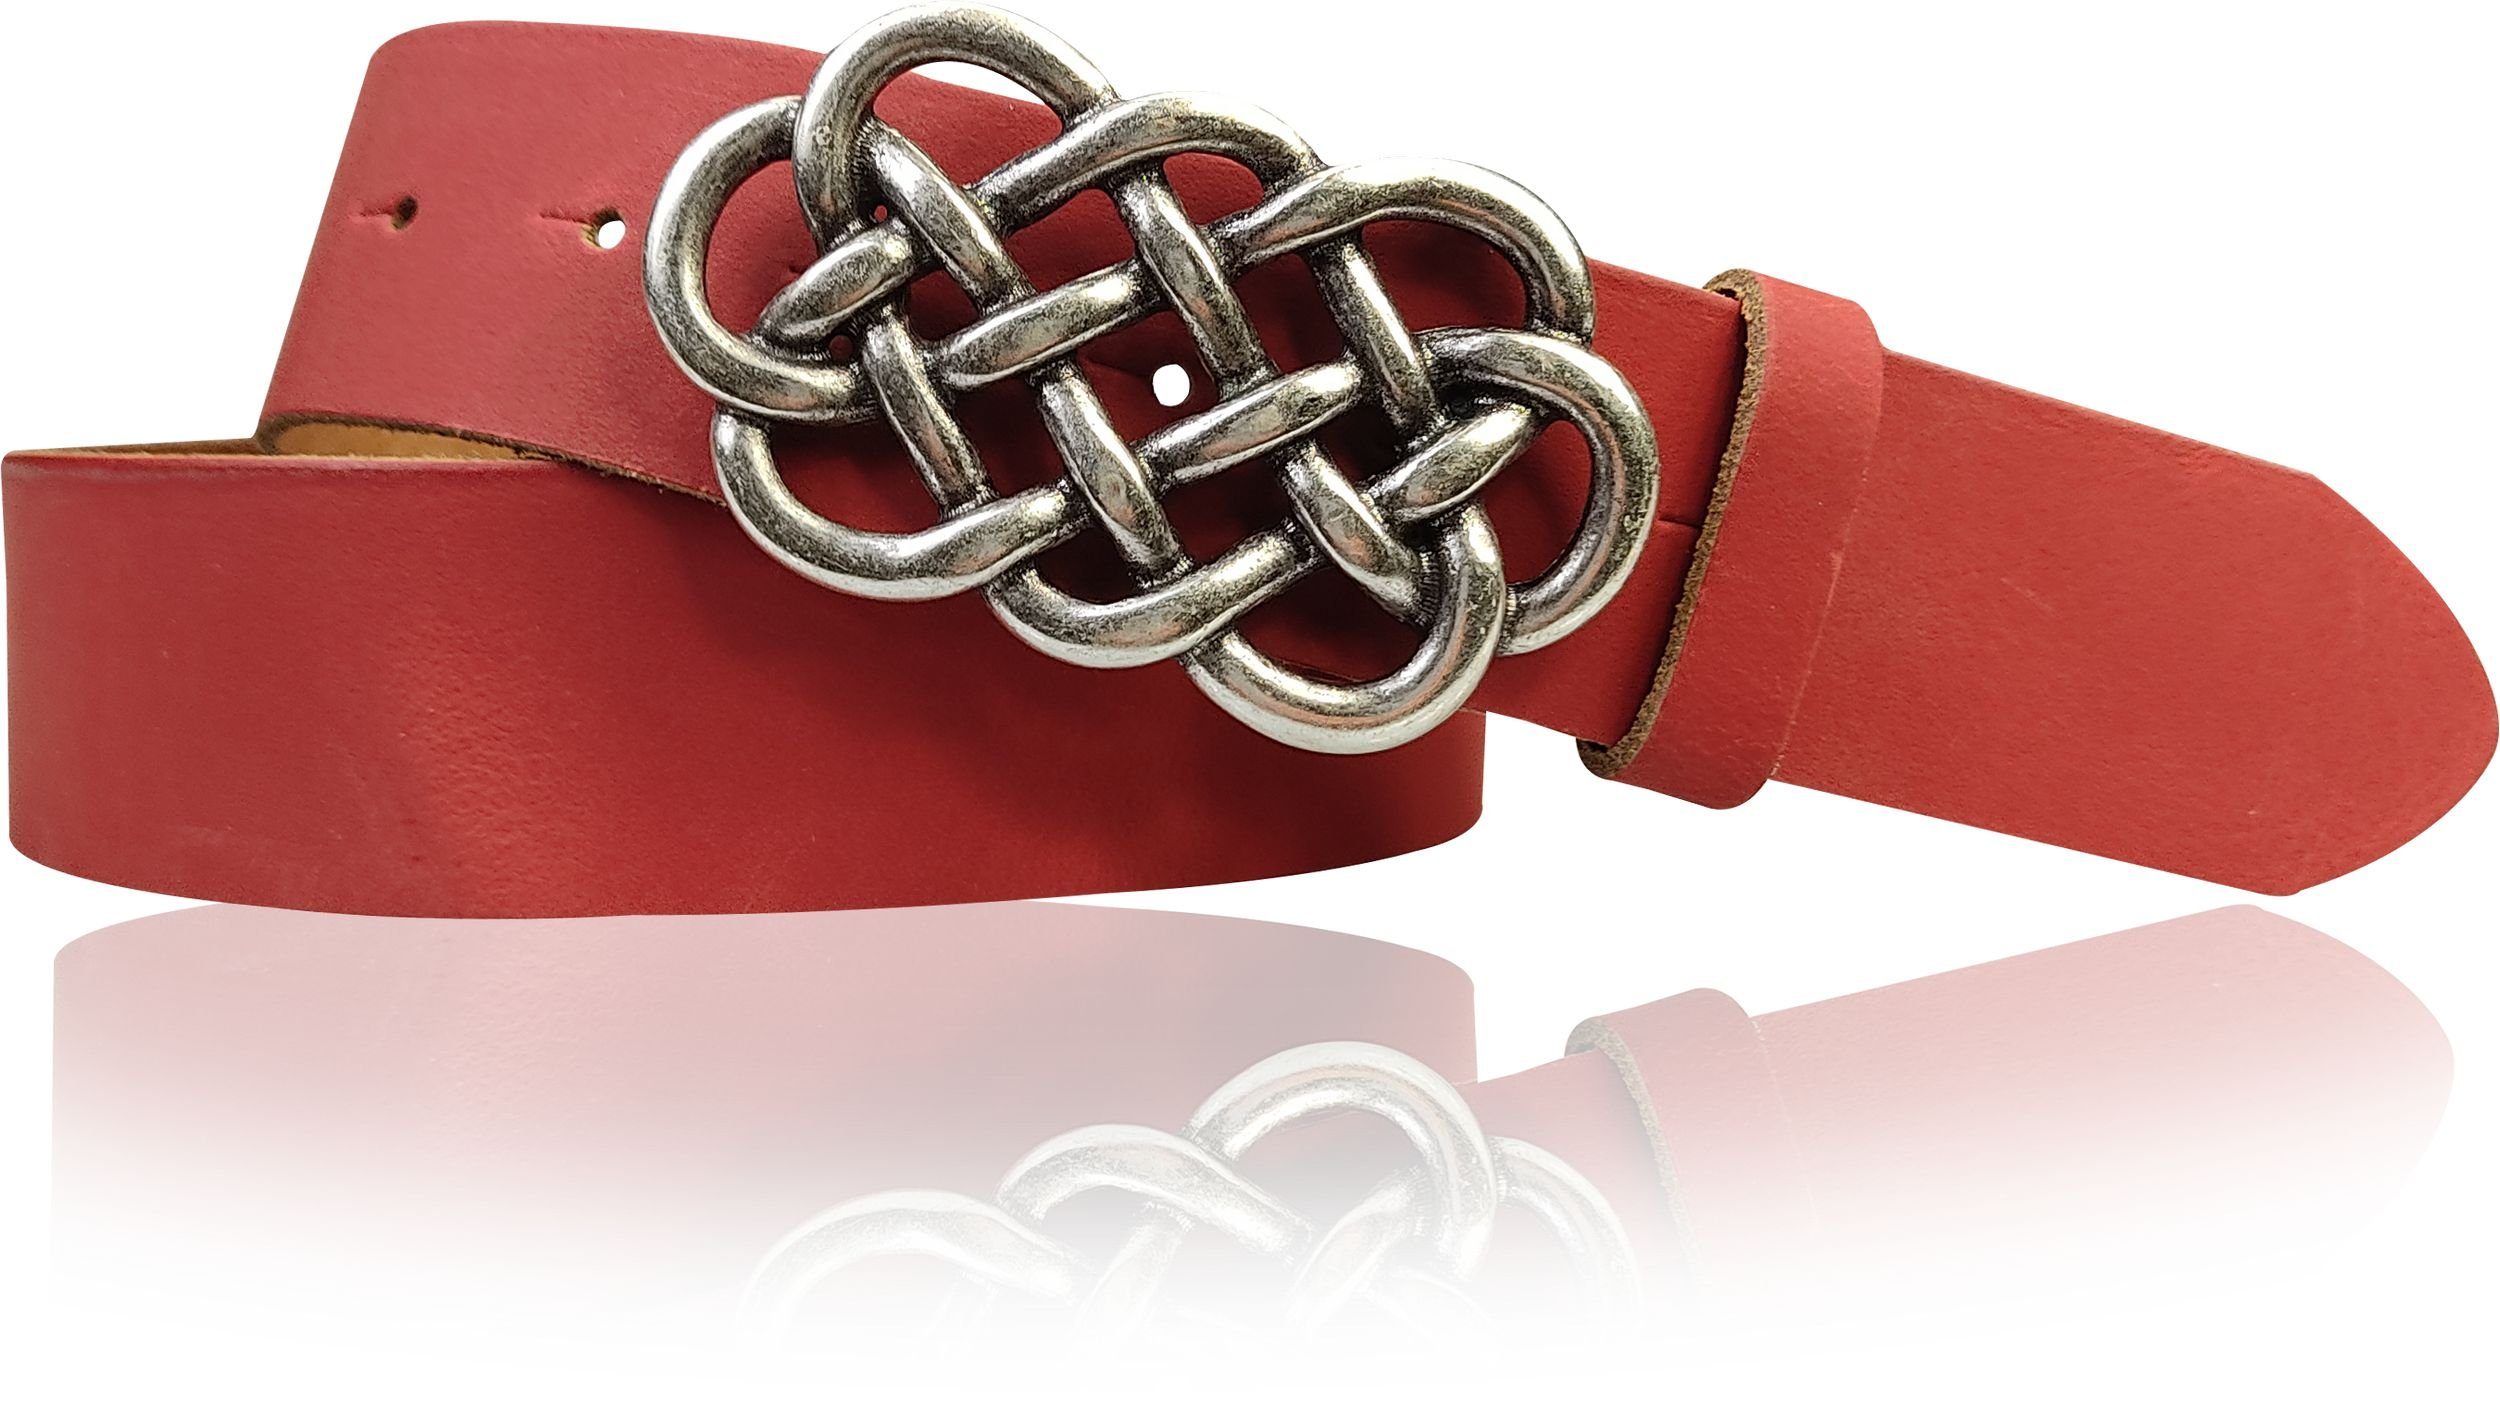 FRONHOFER Koppelgürtel 18220 Damengürtel 4 cmkeltische Gürtelschnalle silber Ledergürtel Rot